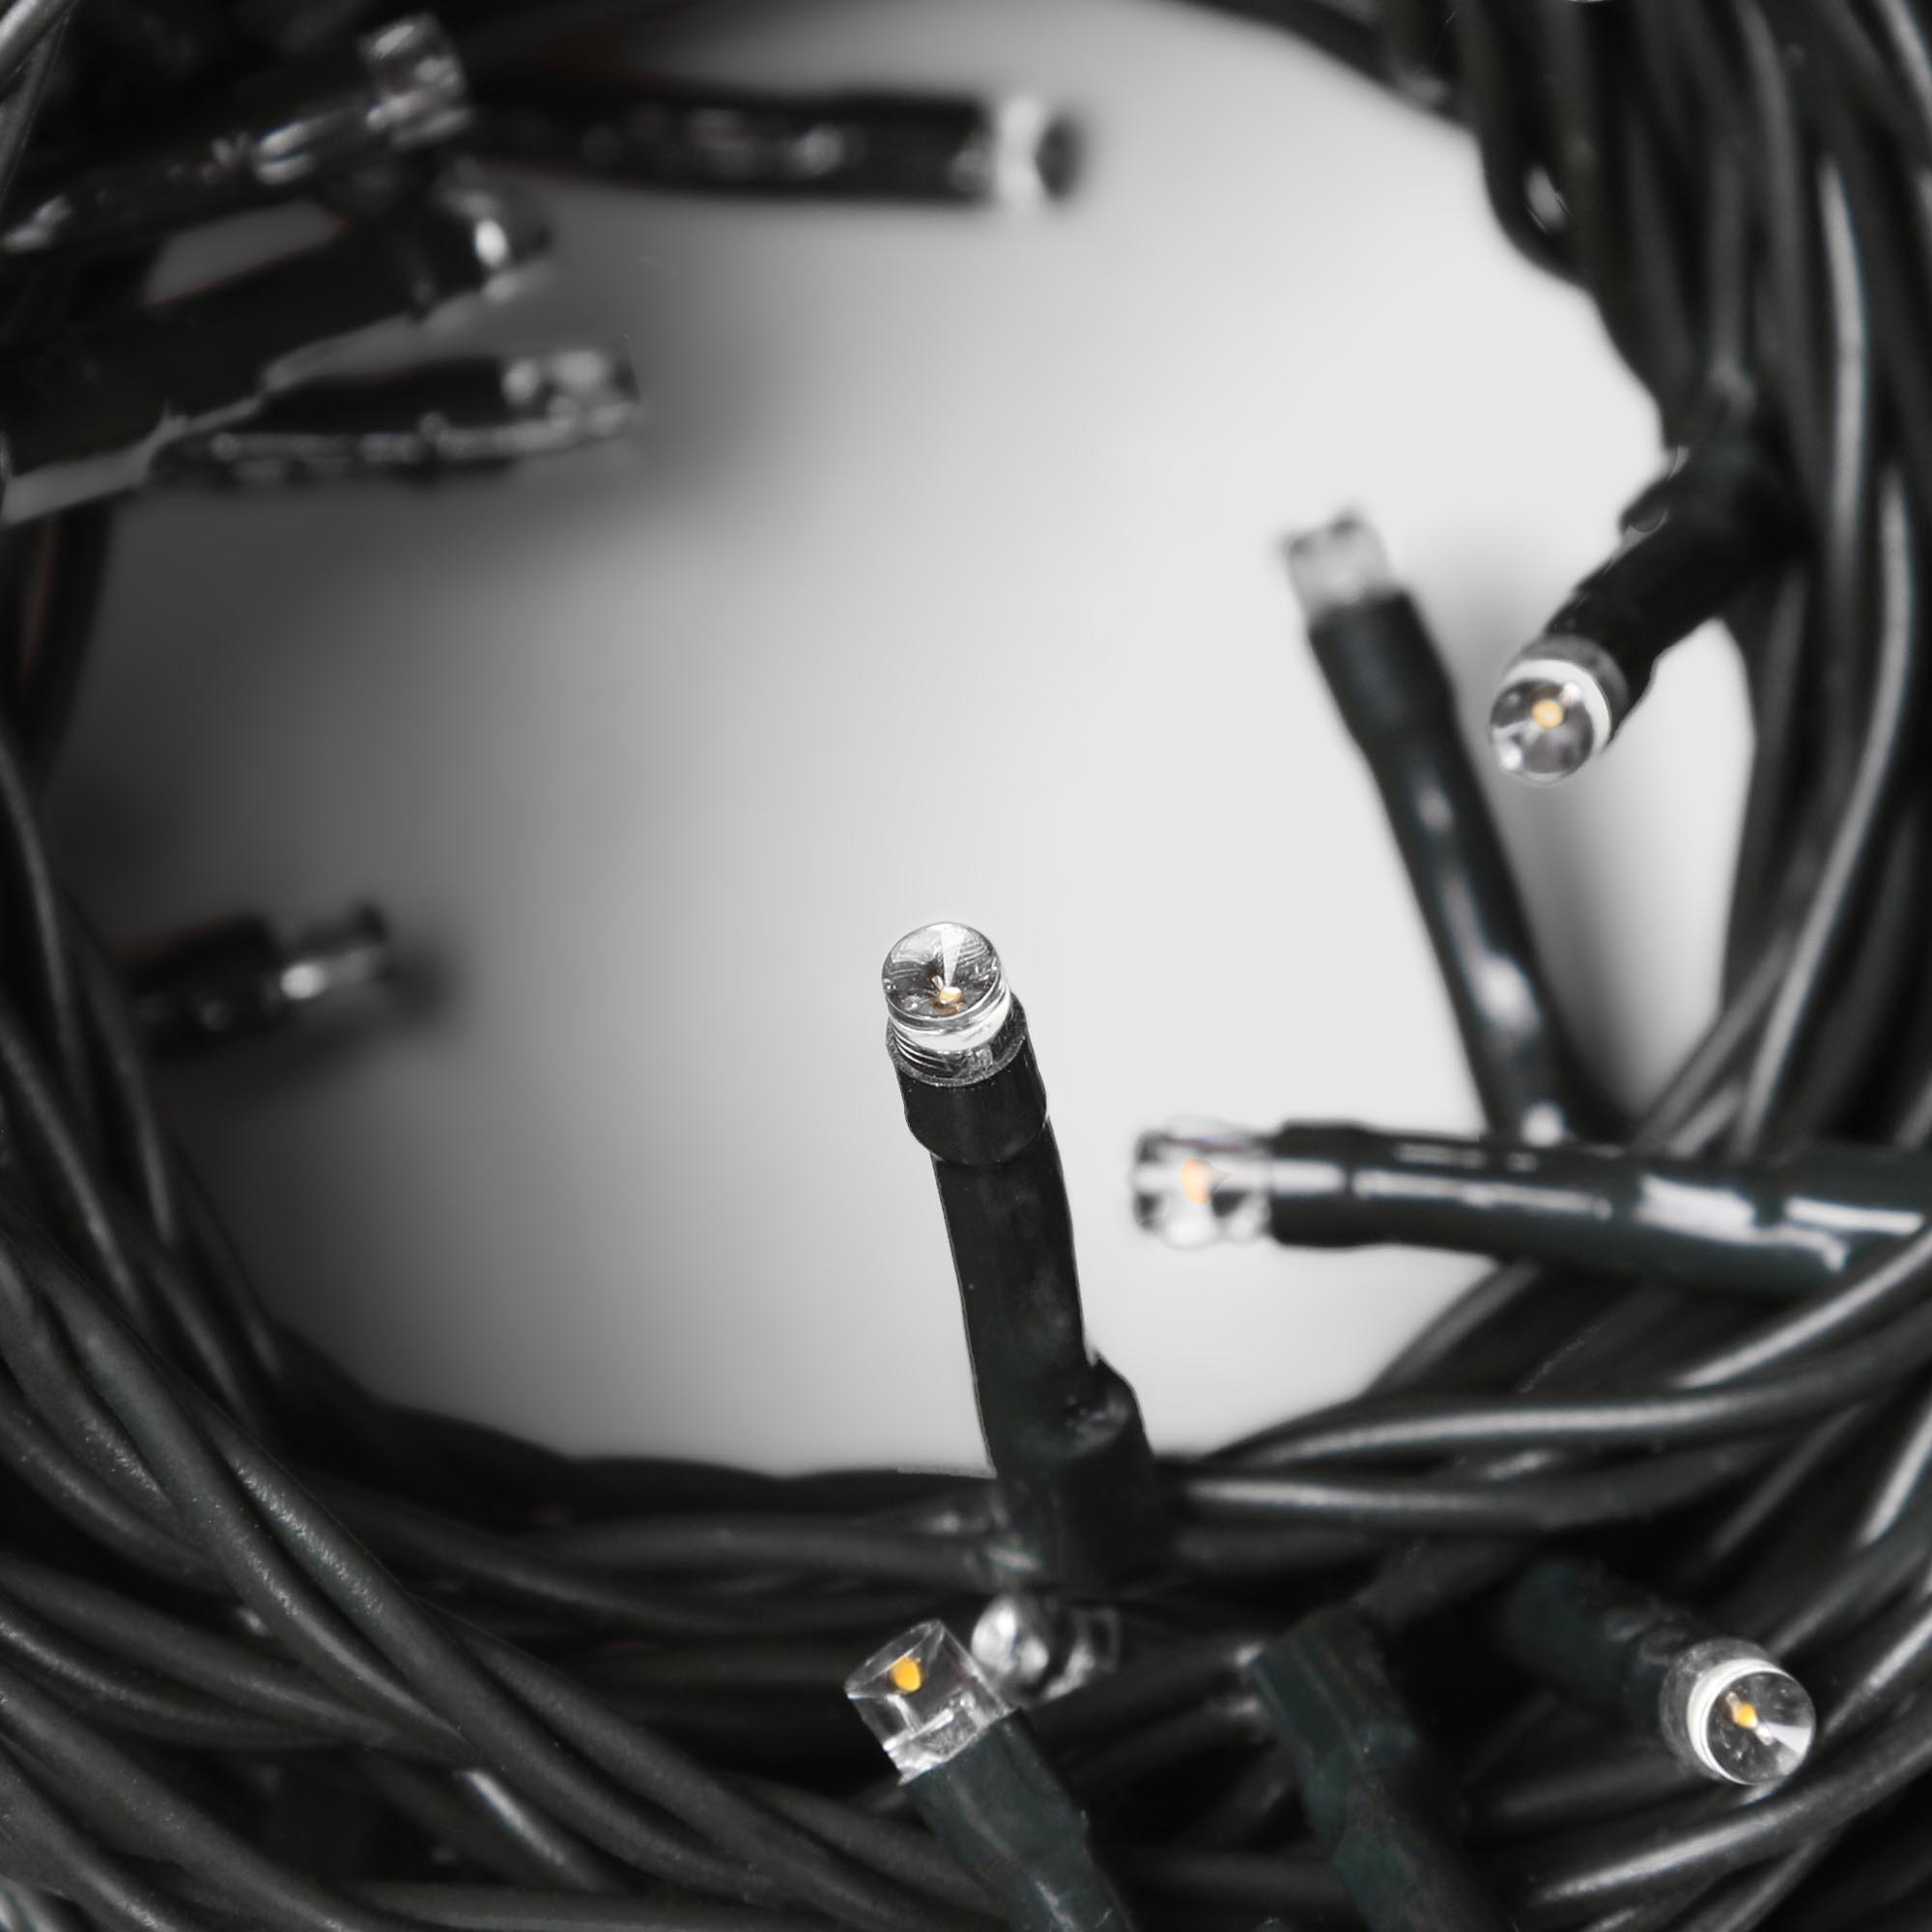 Гирлянда уличная Lotti NTL Minicluster 2000 leds холодный белый 4+40,5 м со стартовым шнуром, цвет черный - фото 7